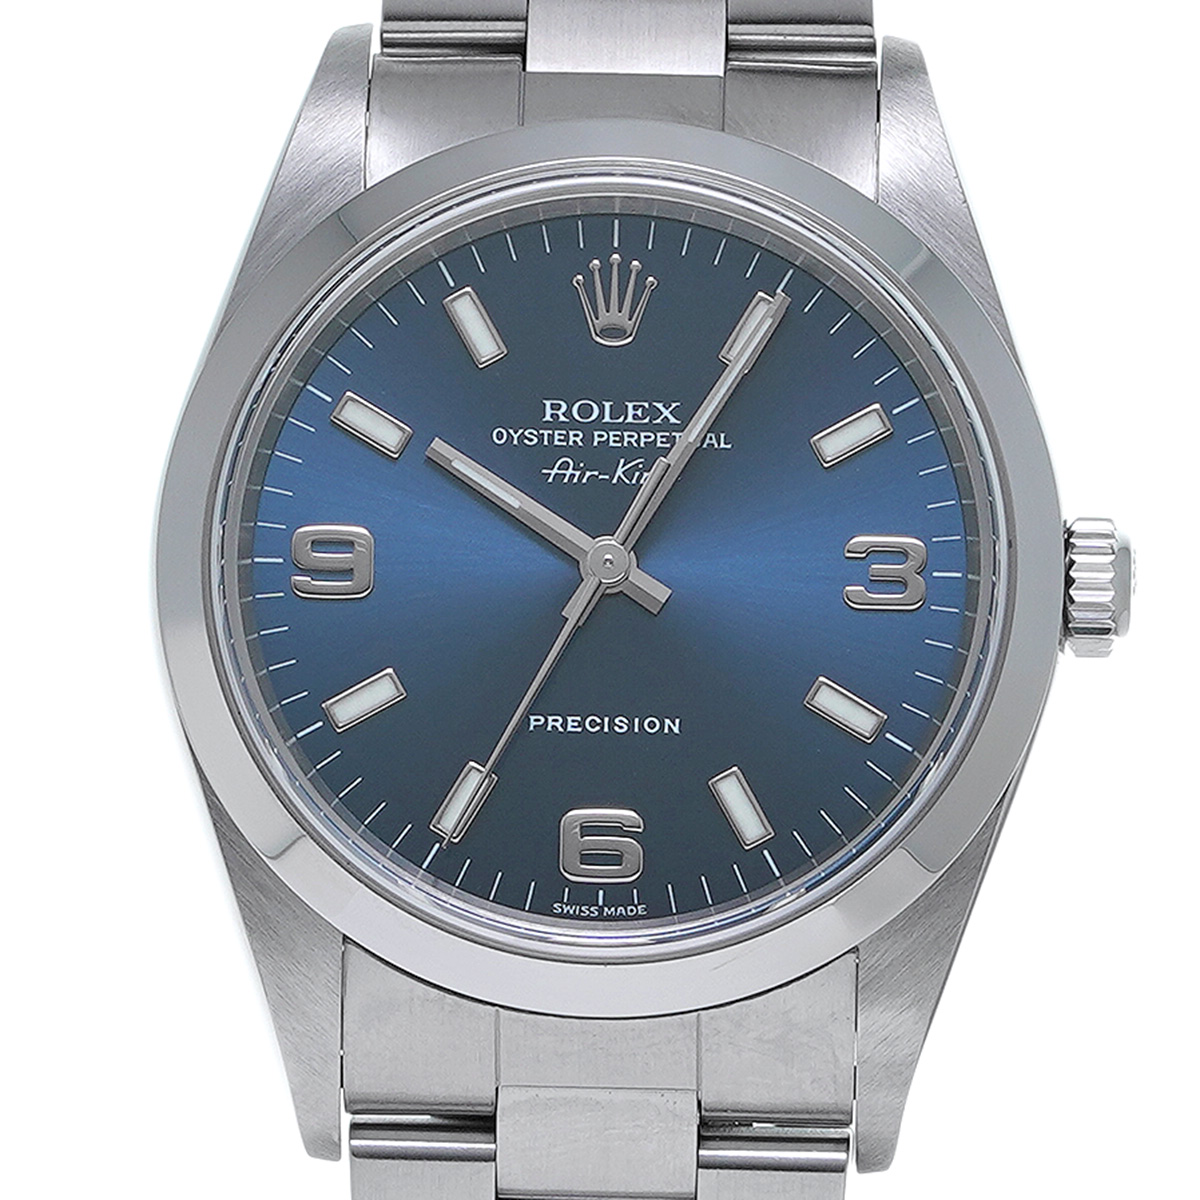 ロレックス ROLEX 14000 A番(1999年頃製造) ブルー メンズ 腕時計